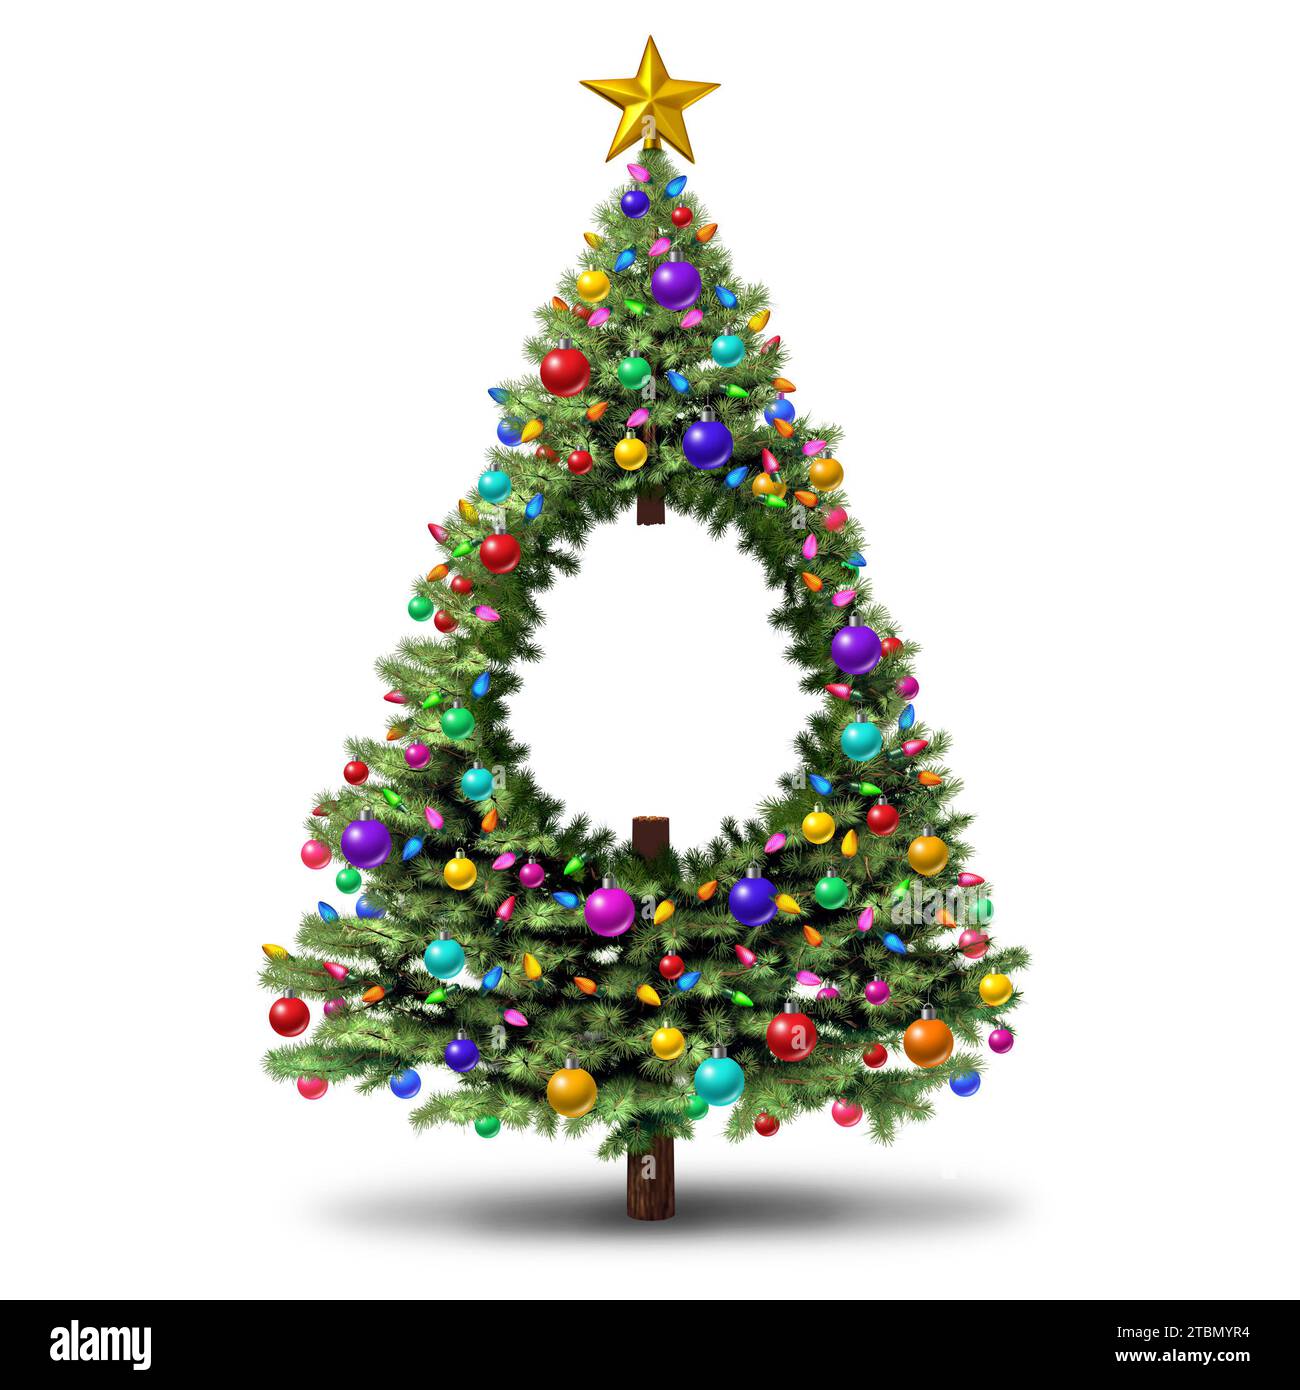 Debito natalizio e metafora delle difficoltà finanziarie come albero di Natale che rappresenta la crisi del credito, la spesa dei consumatori e il ba Foto Stock